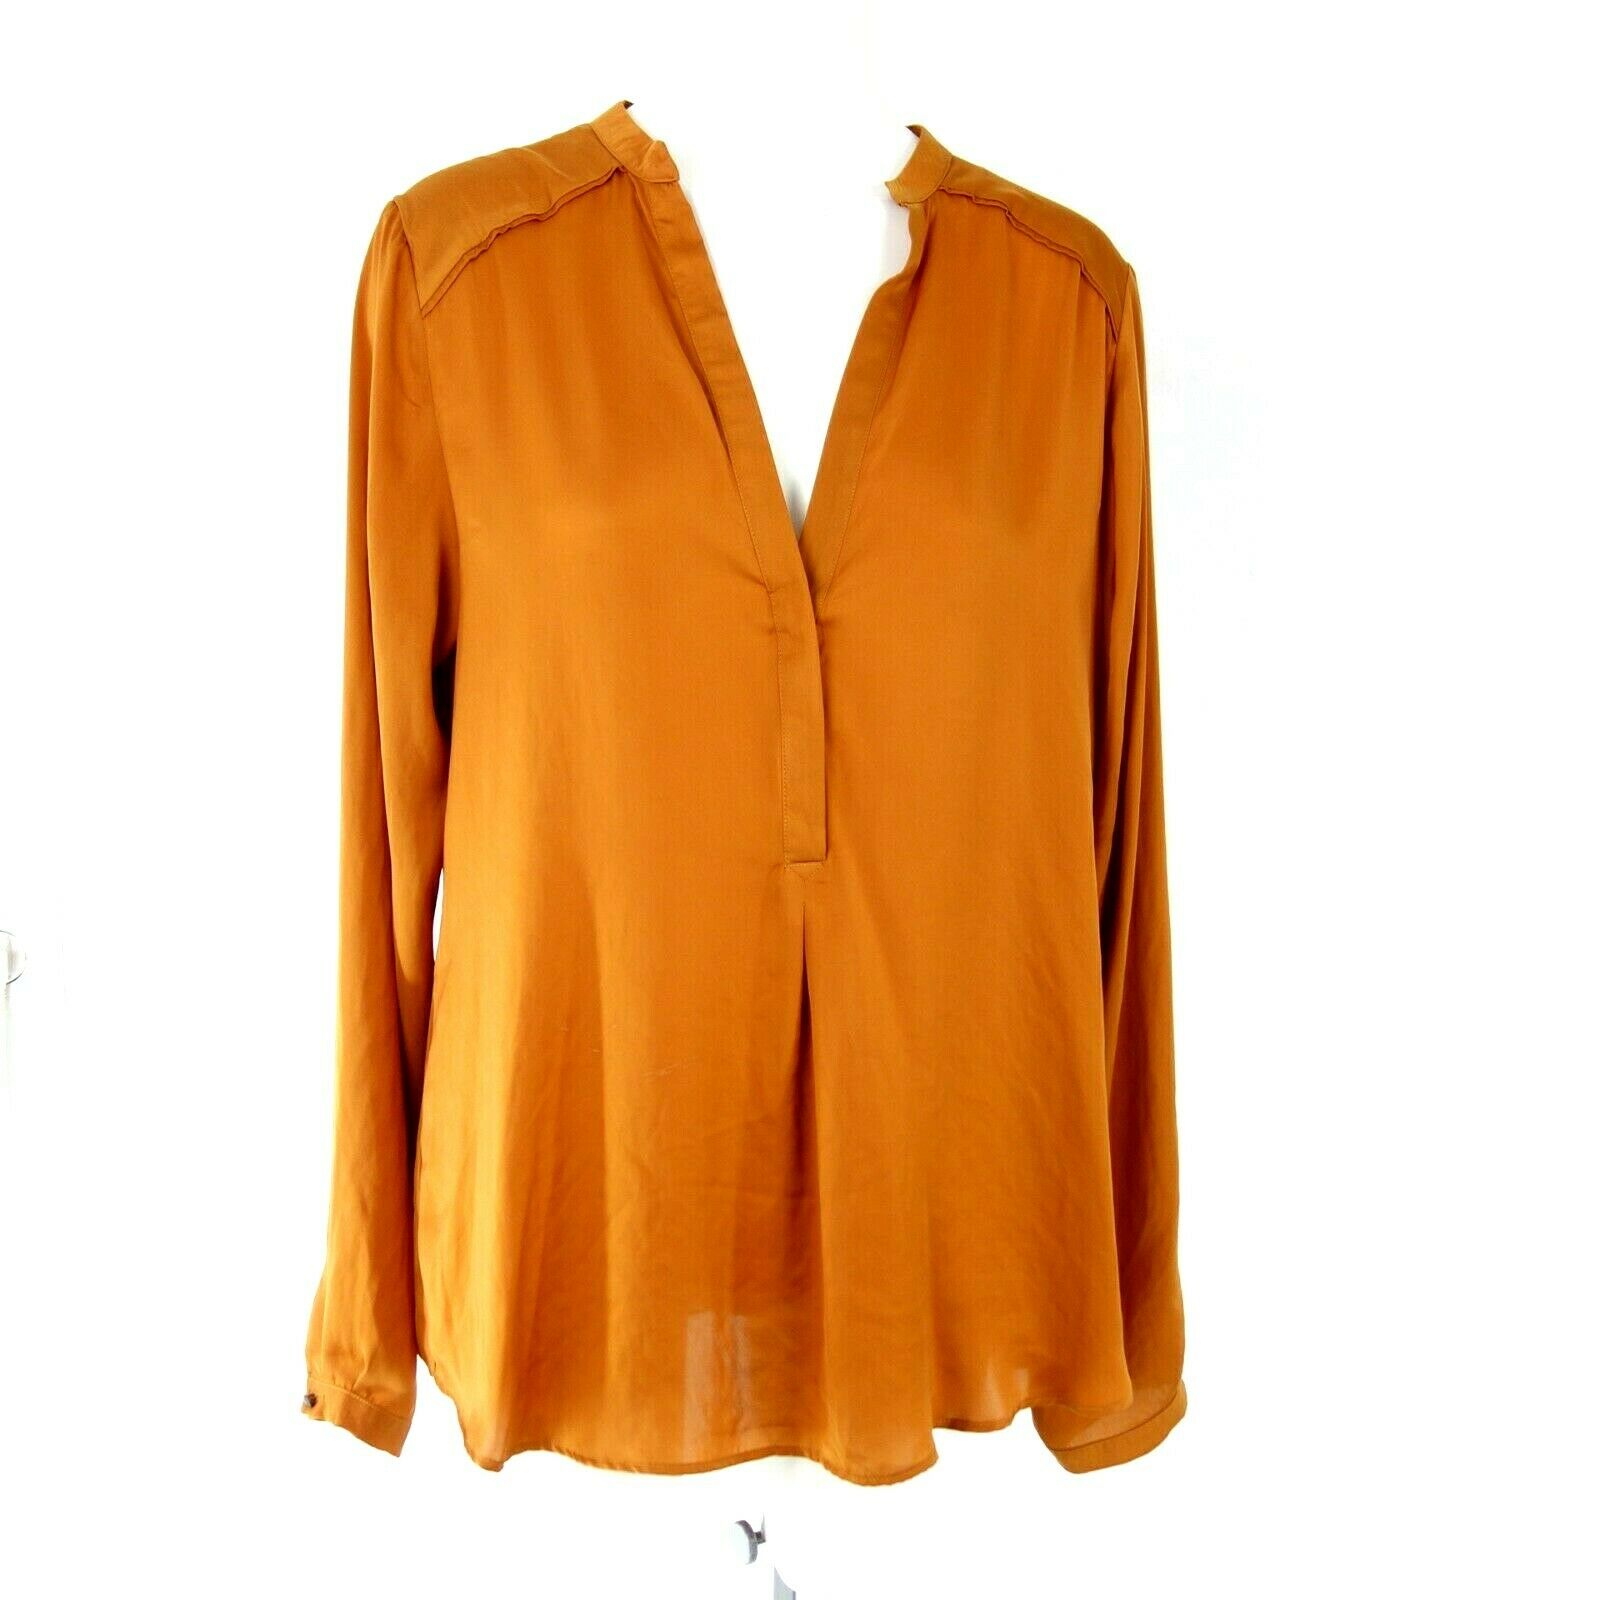 EXPRESSO Damen Bluse Tunika Damenshirt Shirt Damenbluse Nashua XL 42 Cognac Neu